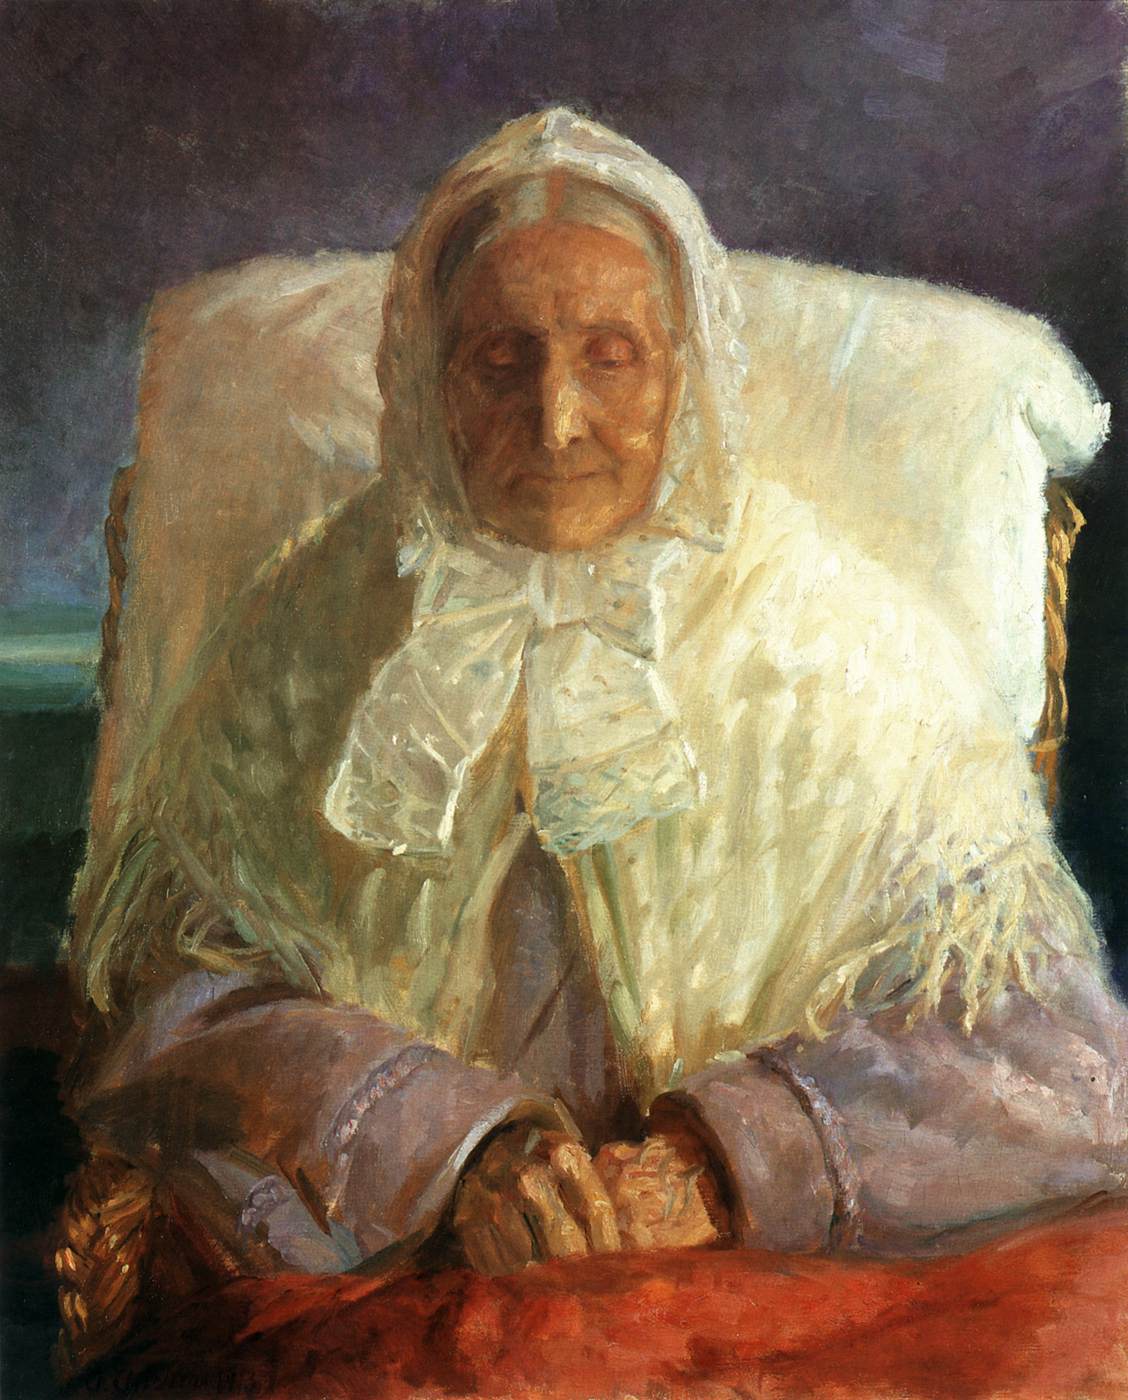 Kunstnerens mor, Ana Hedvig Brøndum